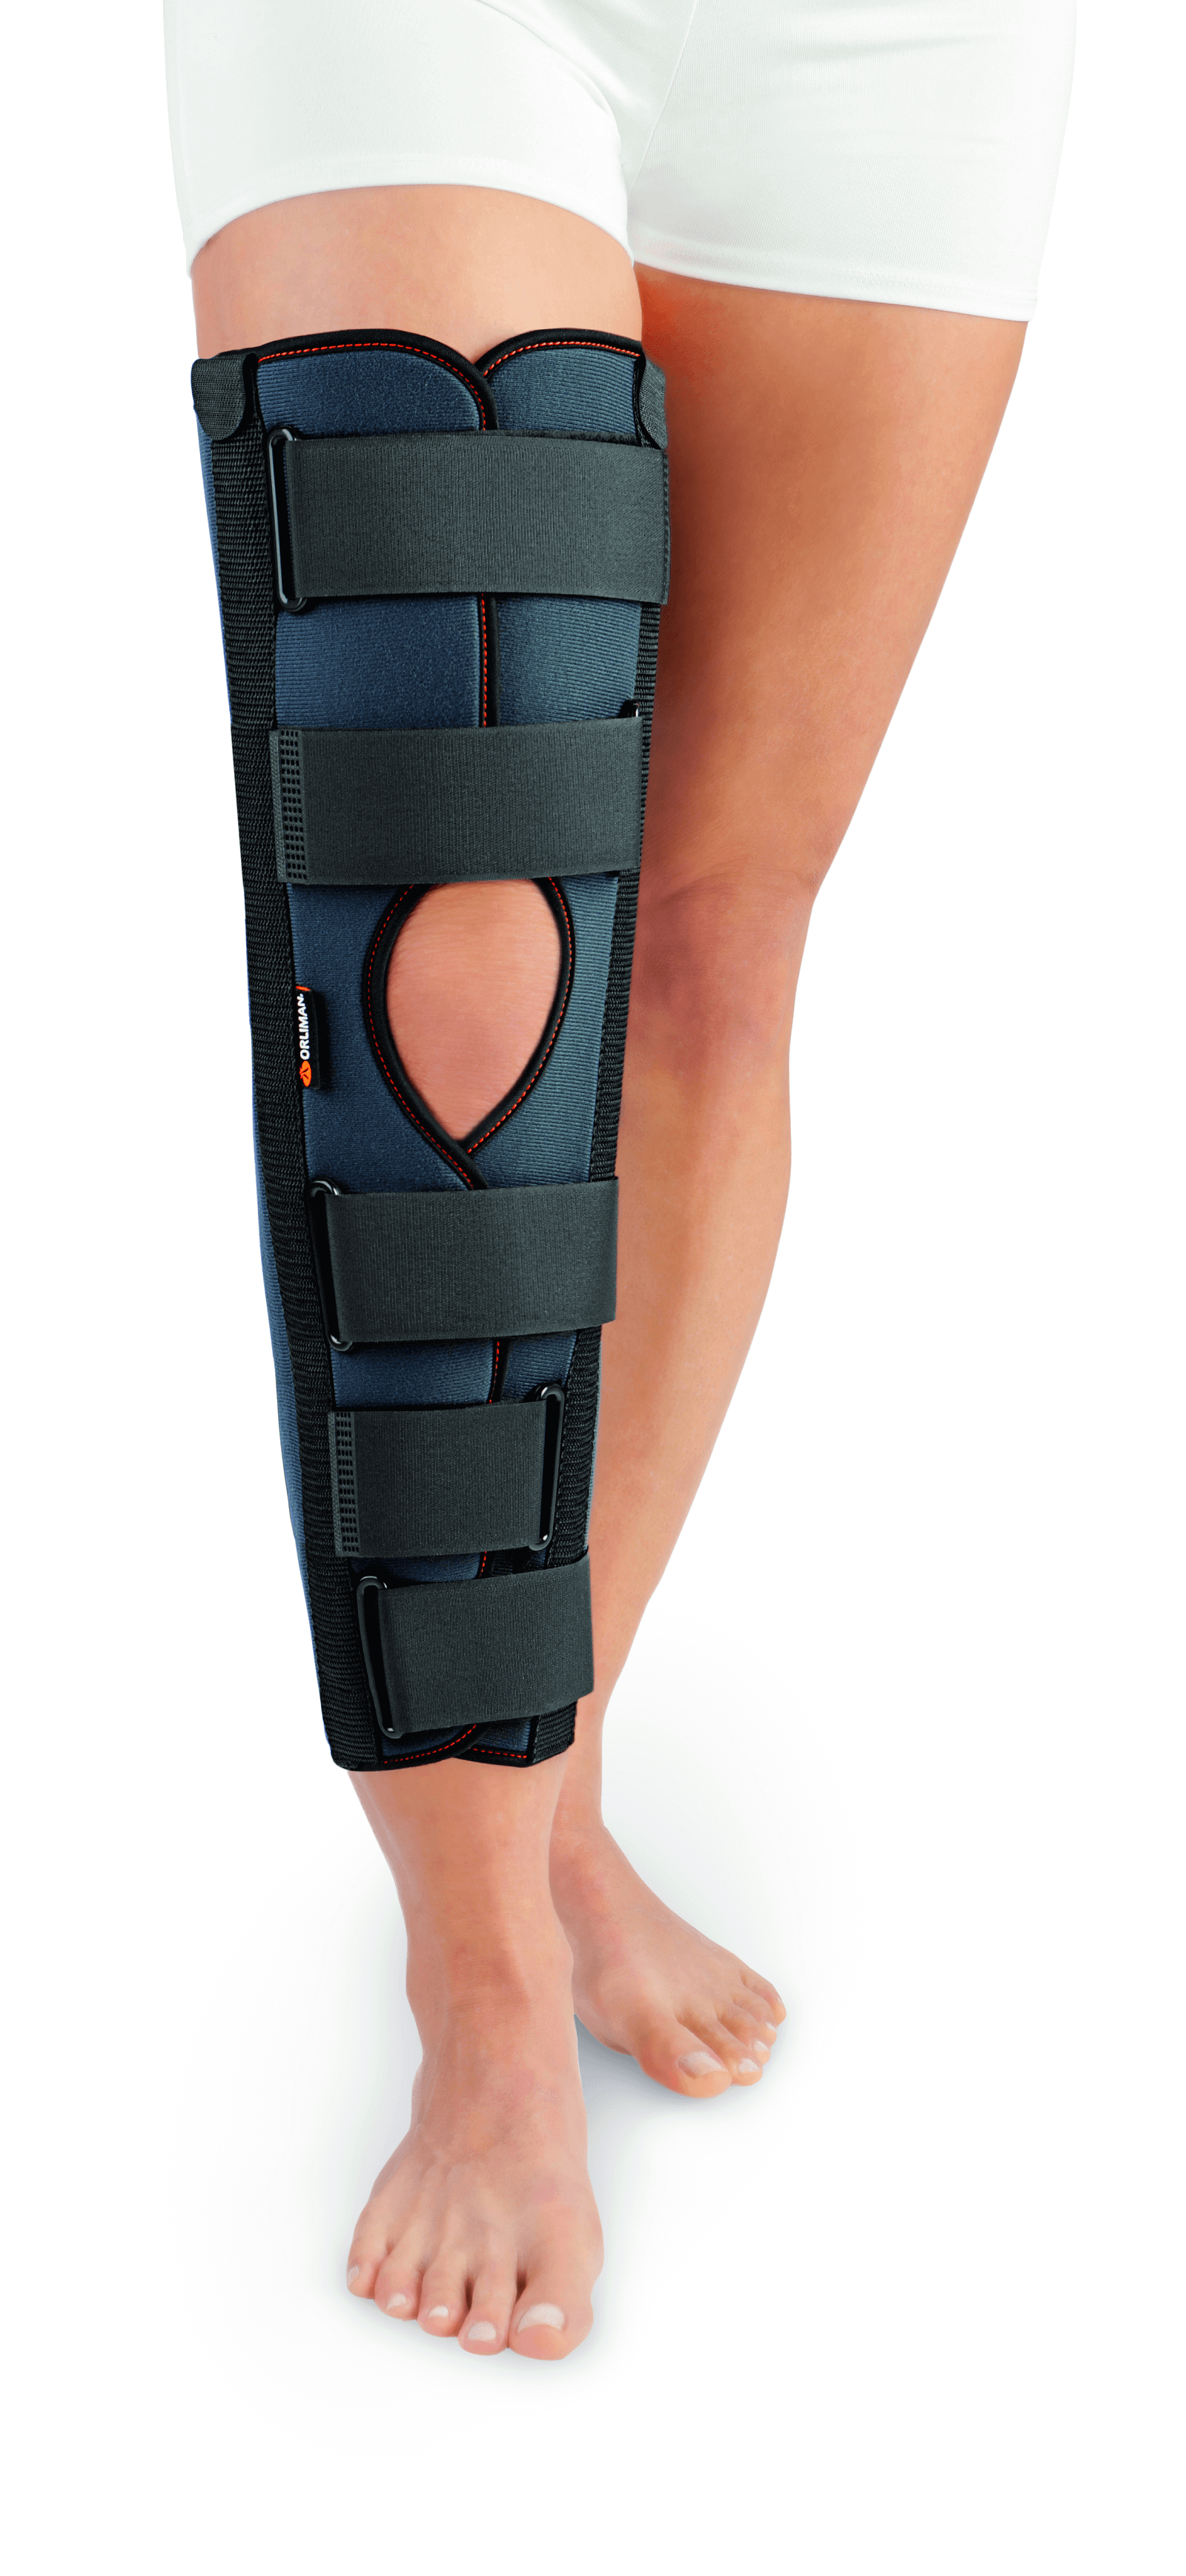 Ортез для иммобилизации коленного сустава тутор